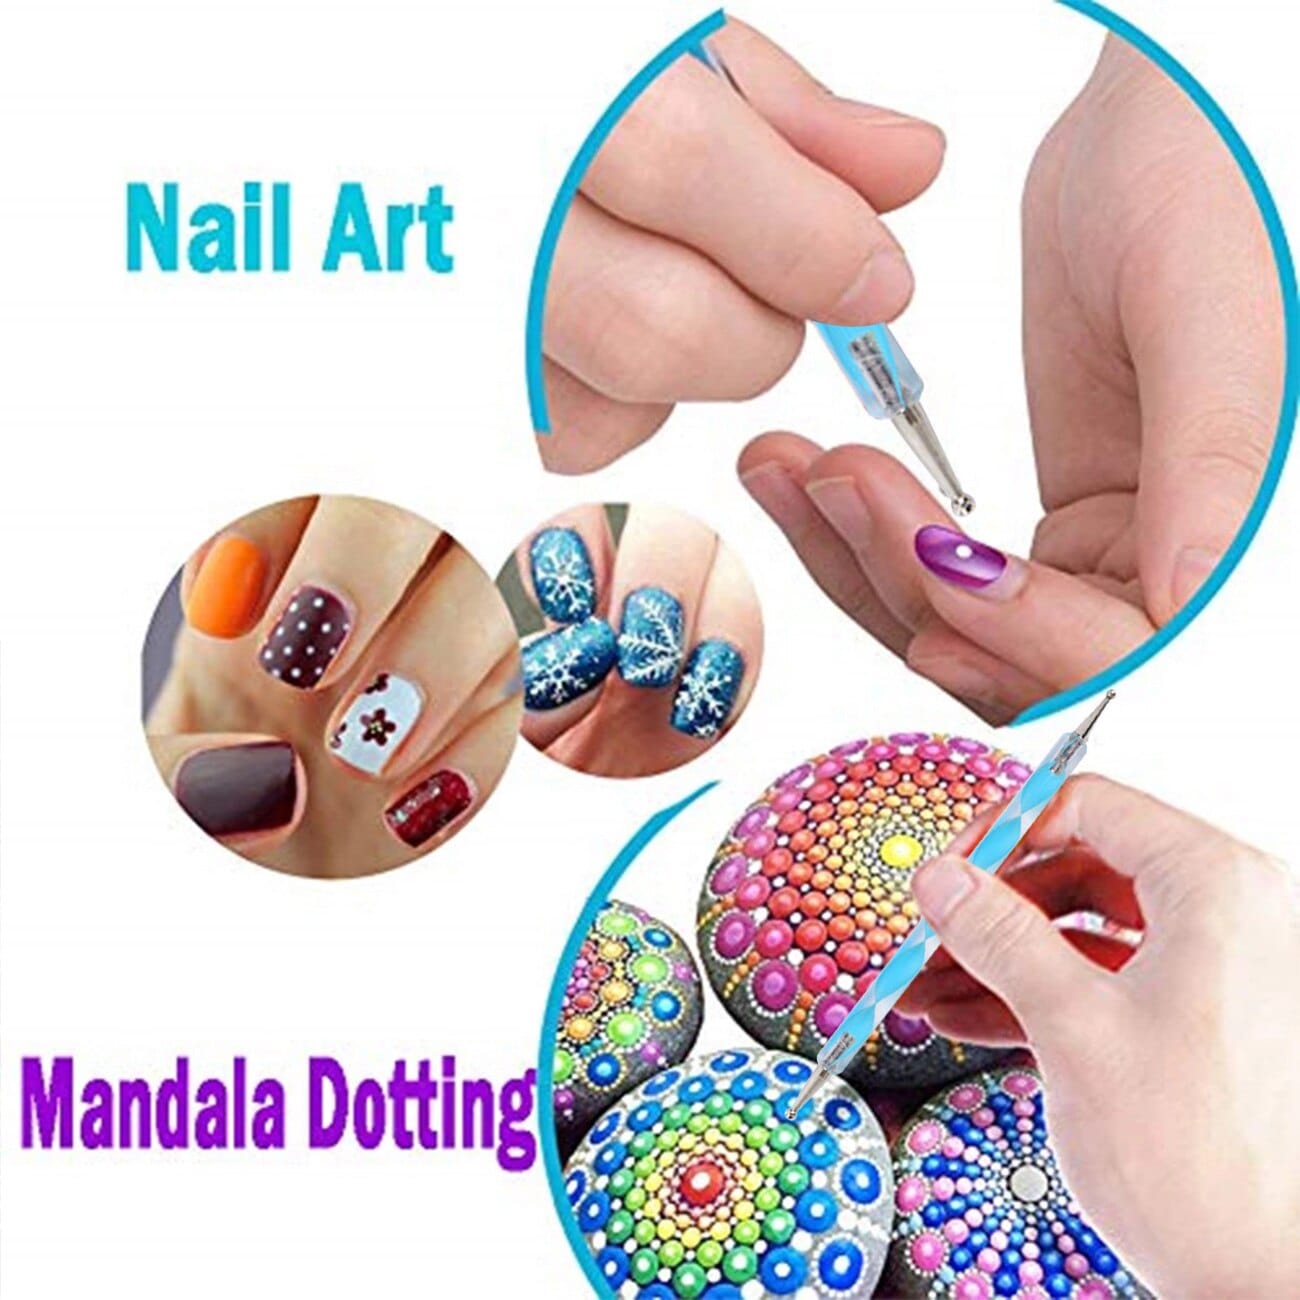 20 pcs Mandala Dotting Tools and Rock Painting Kit - Daladots